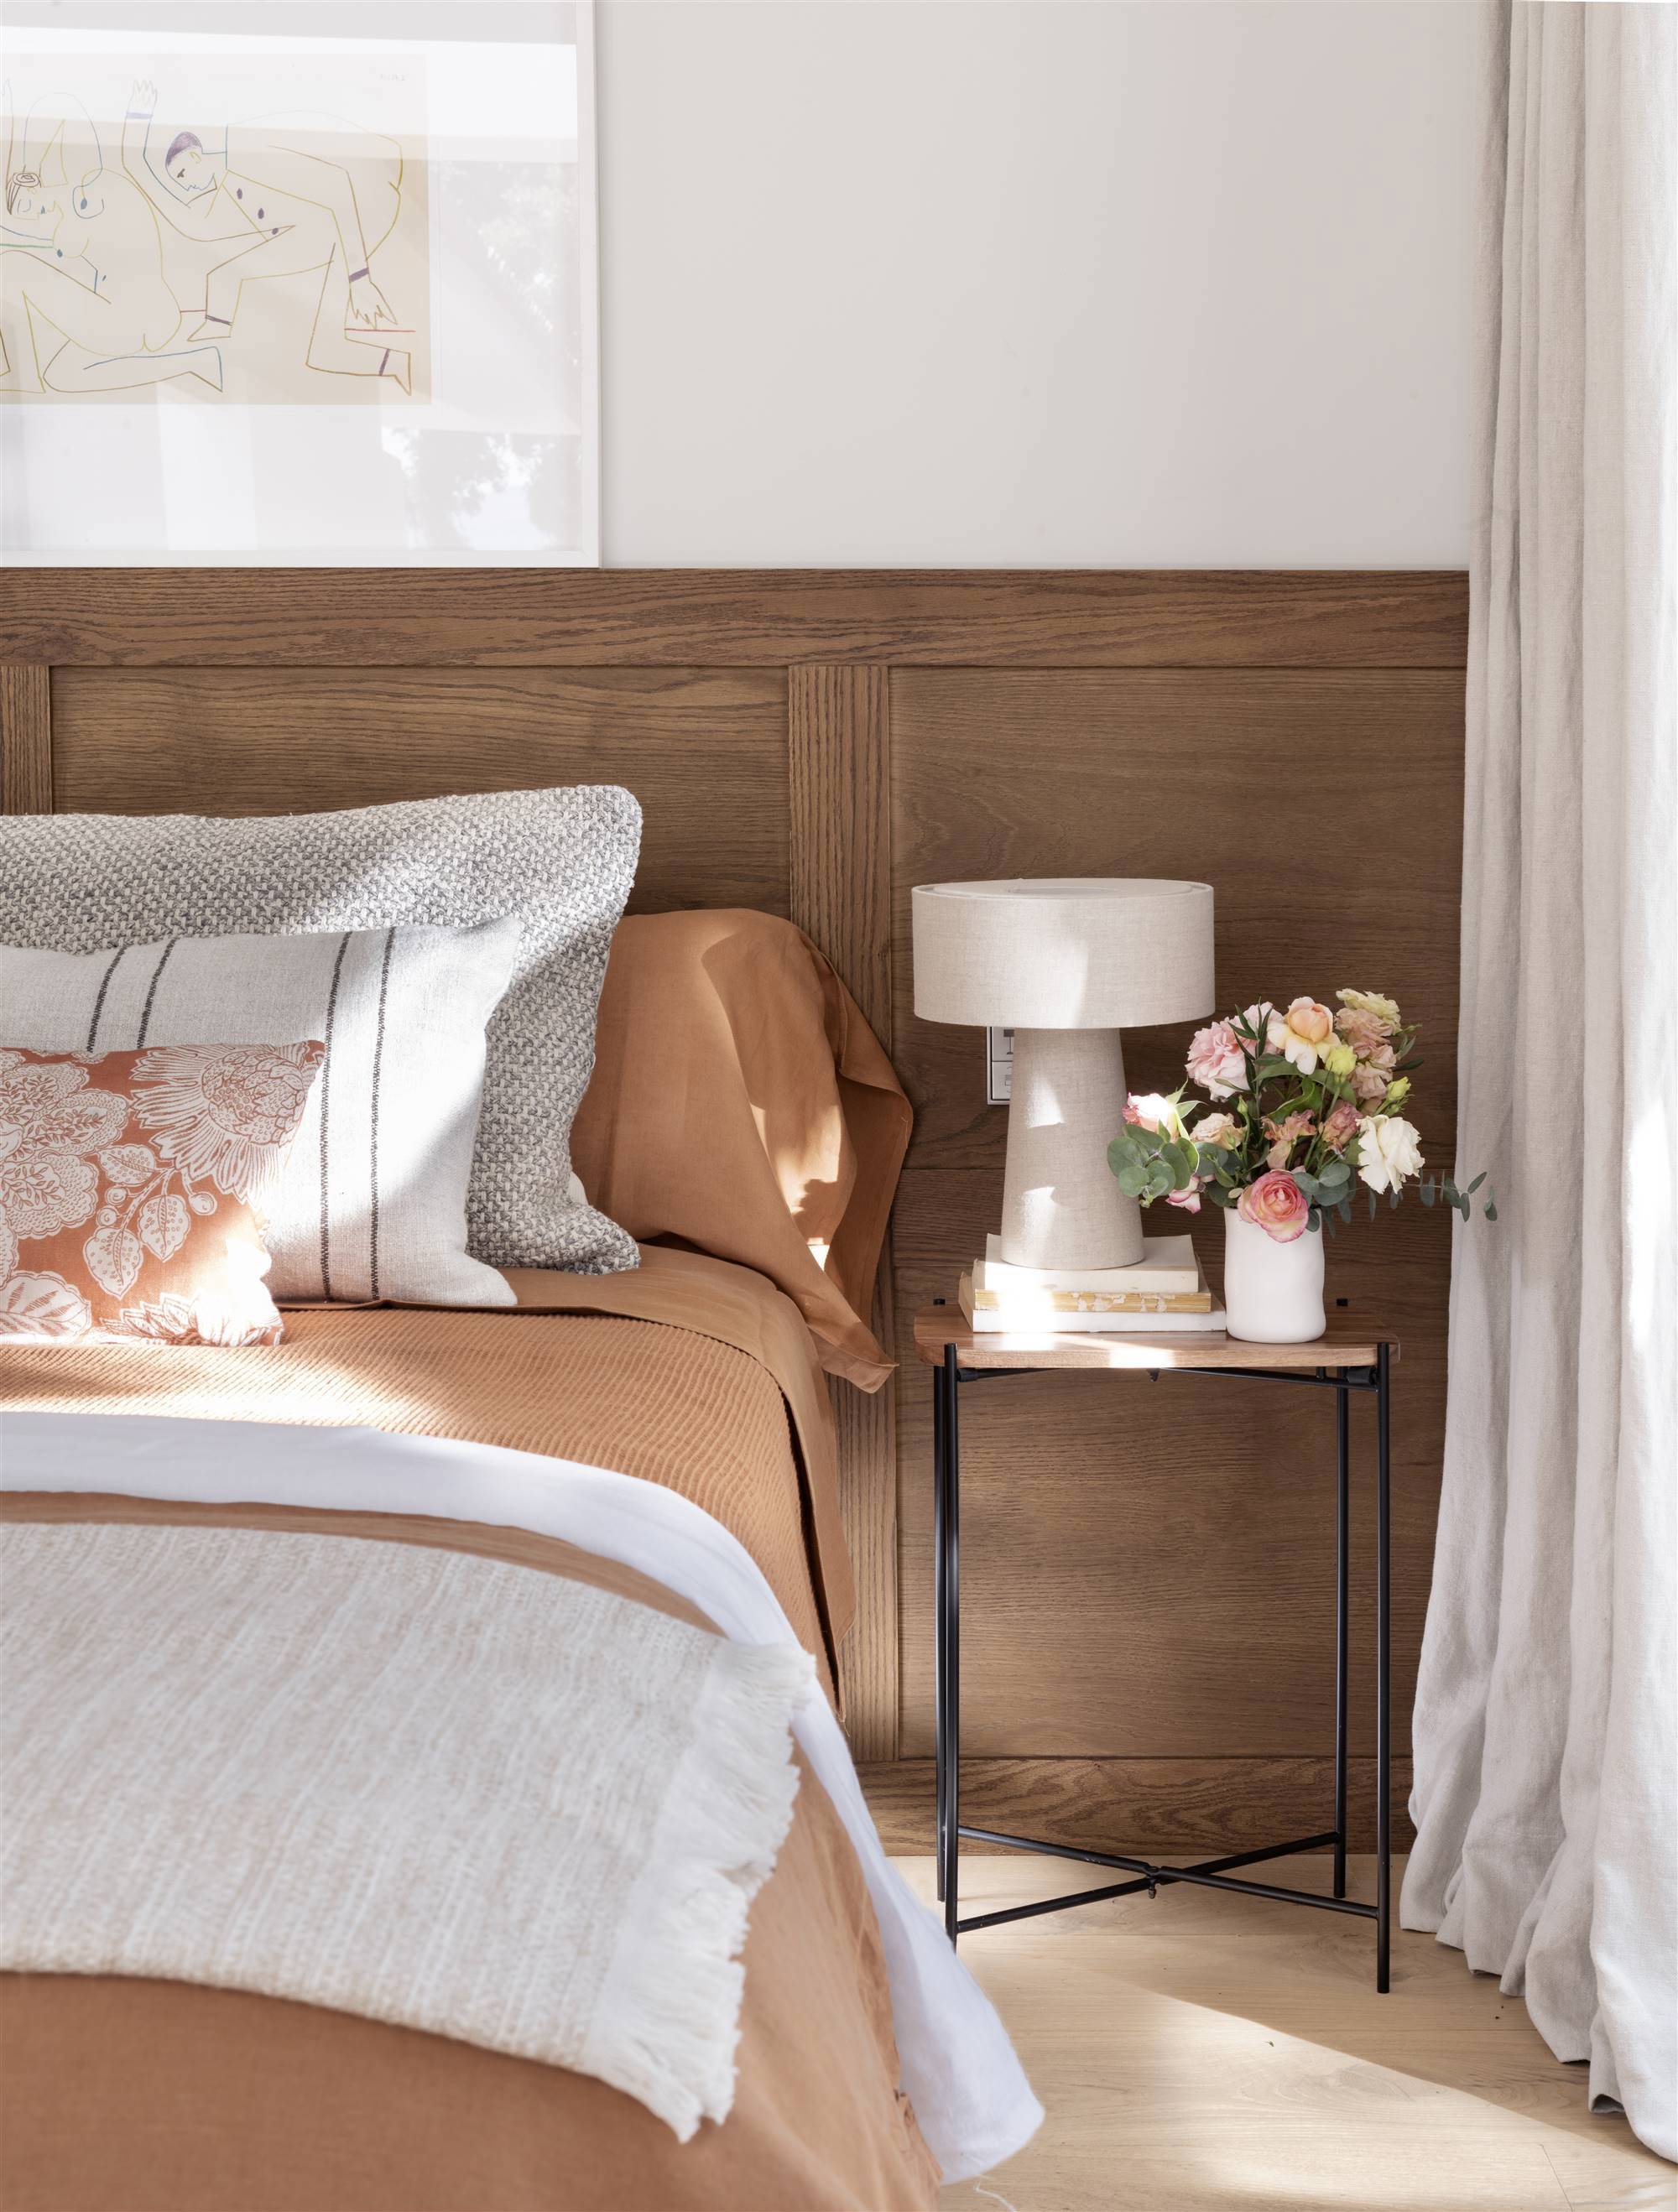 Dormitorio con friso de madera y ropa de cama color teja.